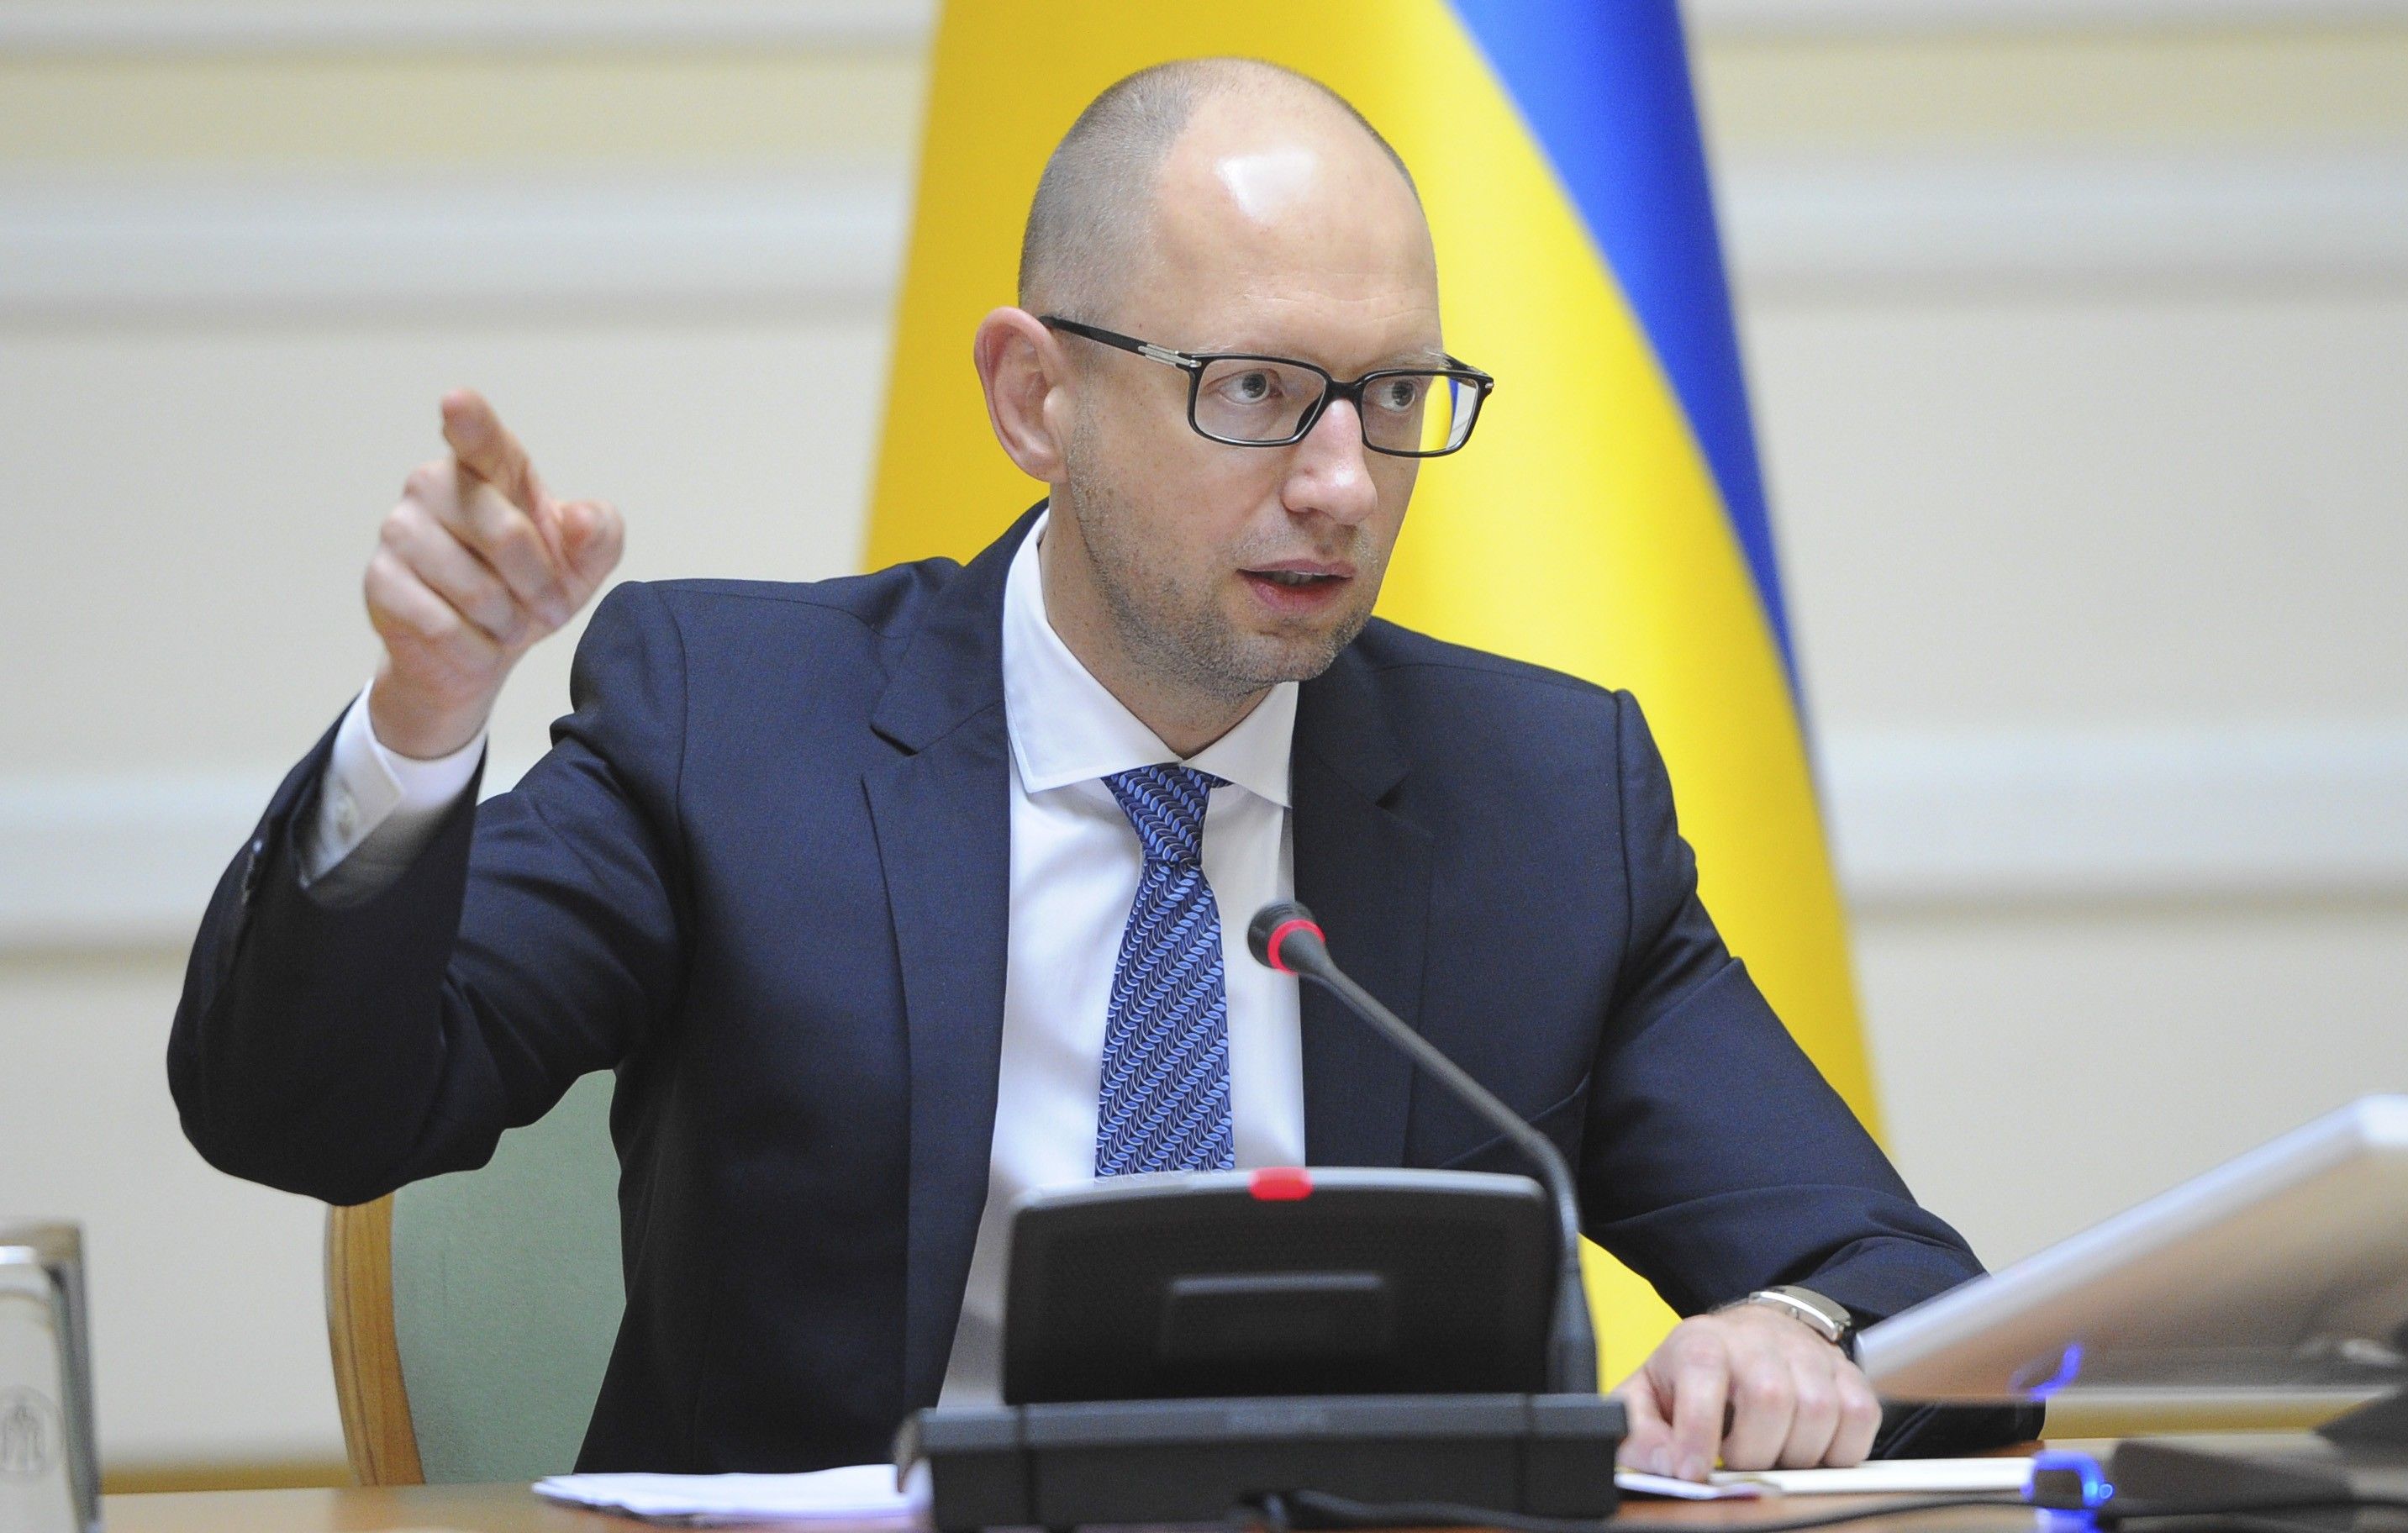 Яценюк: Украина не будет платить за электроэнергию, которая идет в зону АТО